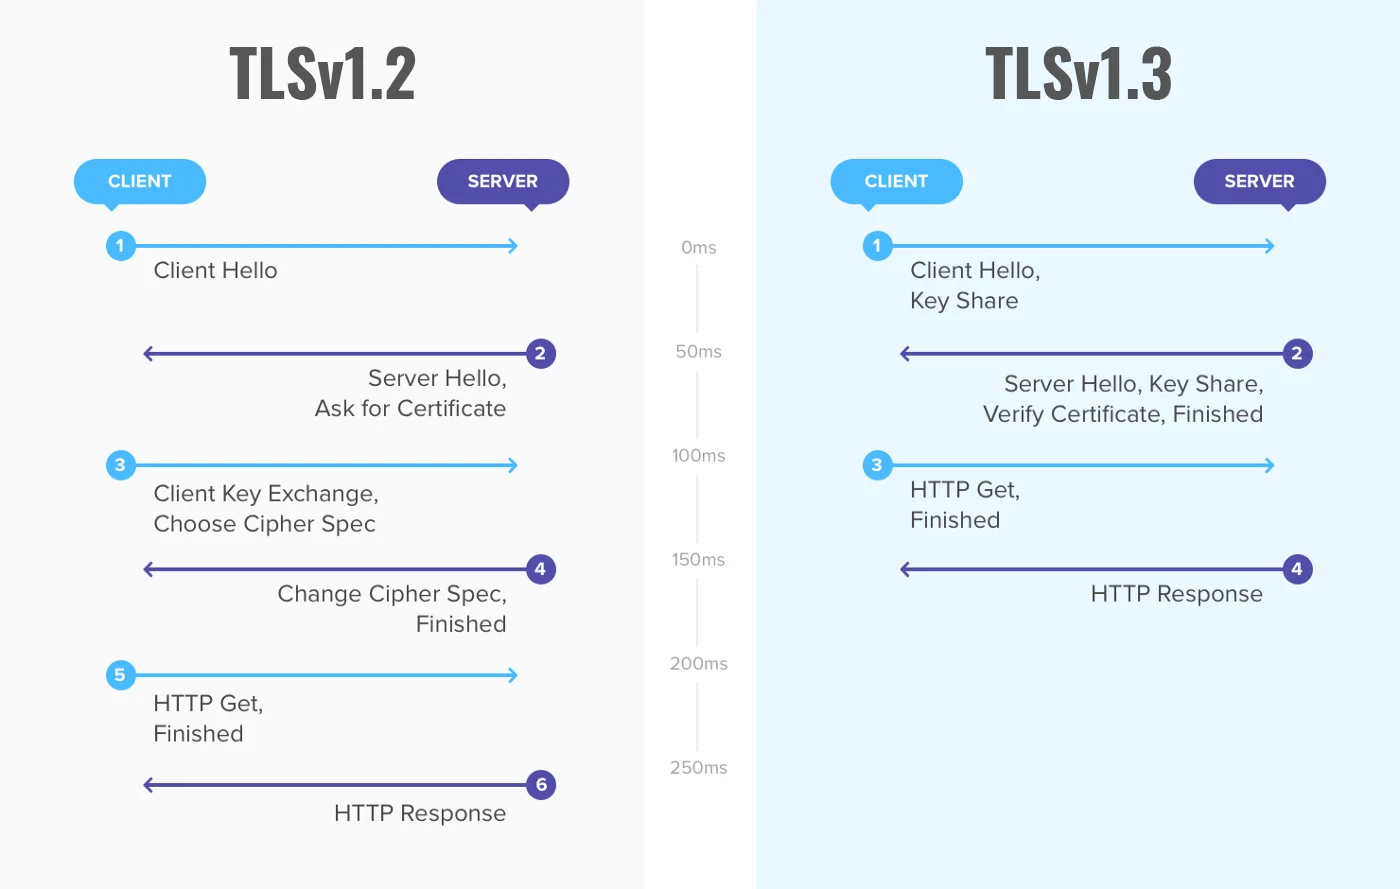 A különbségek között TLSv1.2 és TLSv1.3